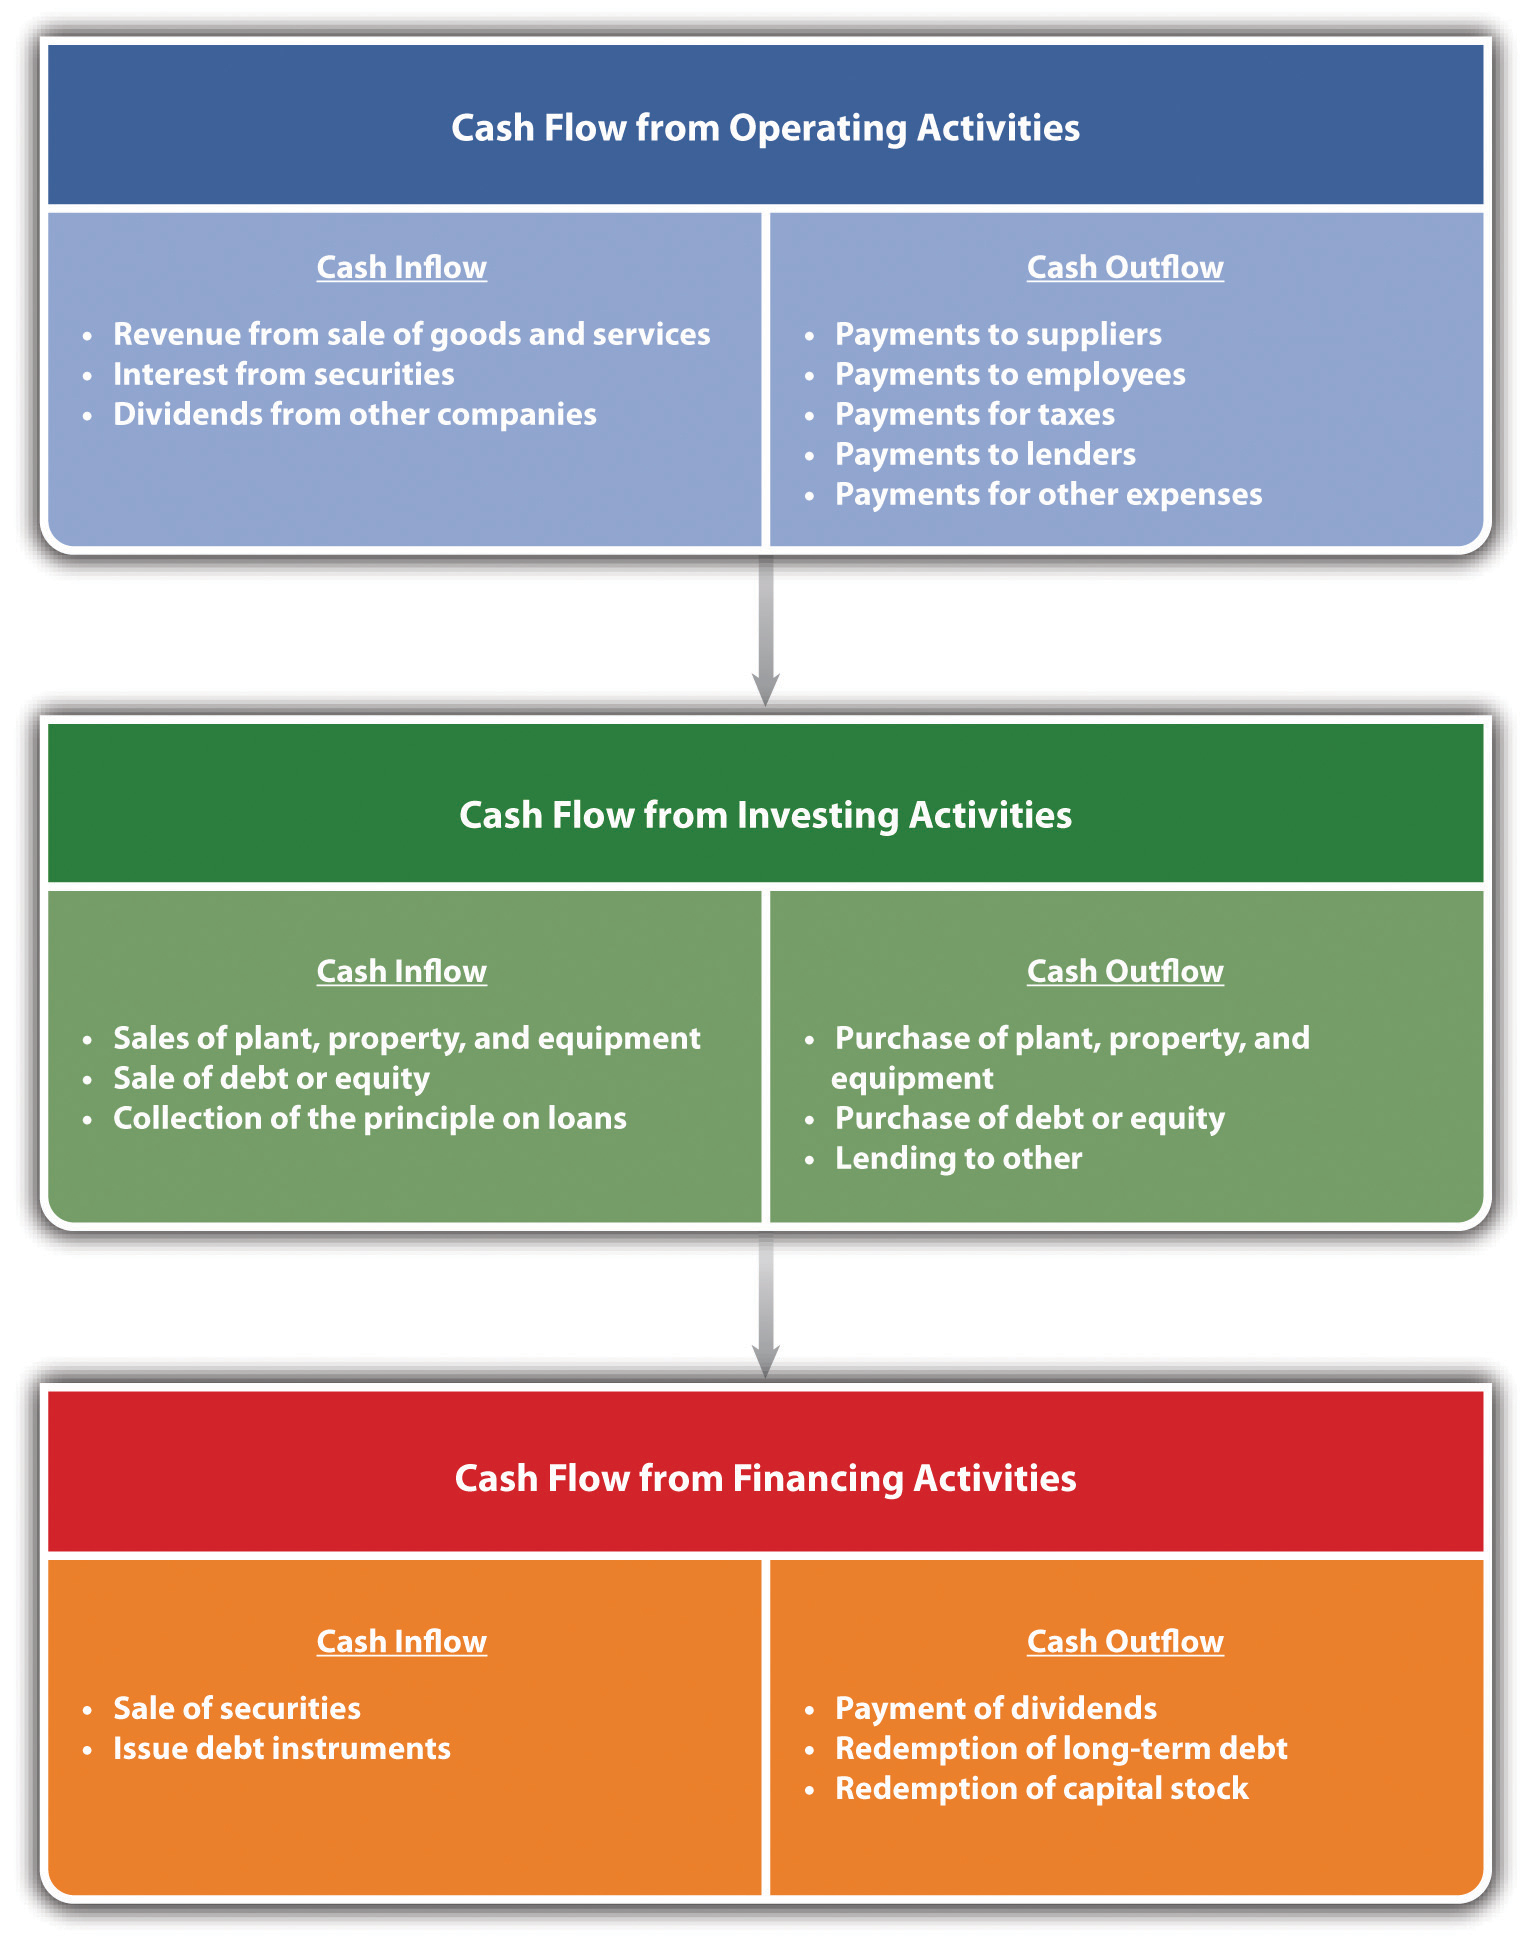 Cash Flow Breakdown: cash flow from operating activities, investing activities, and financing activities